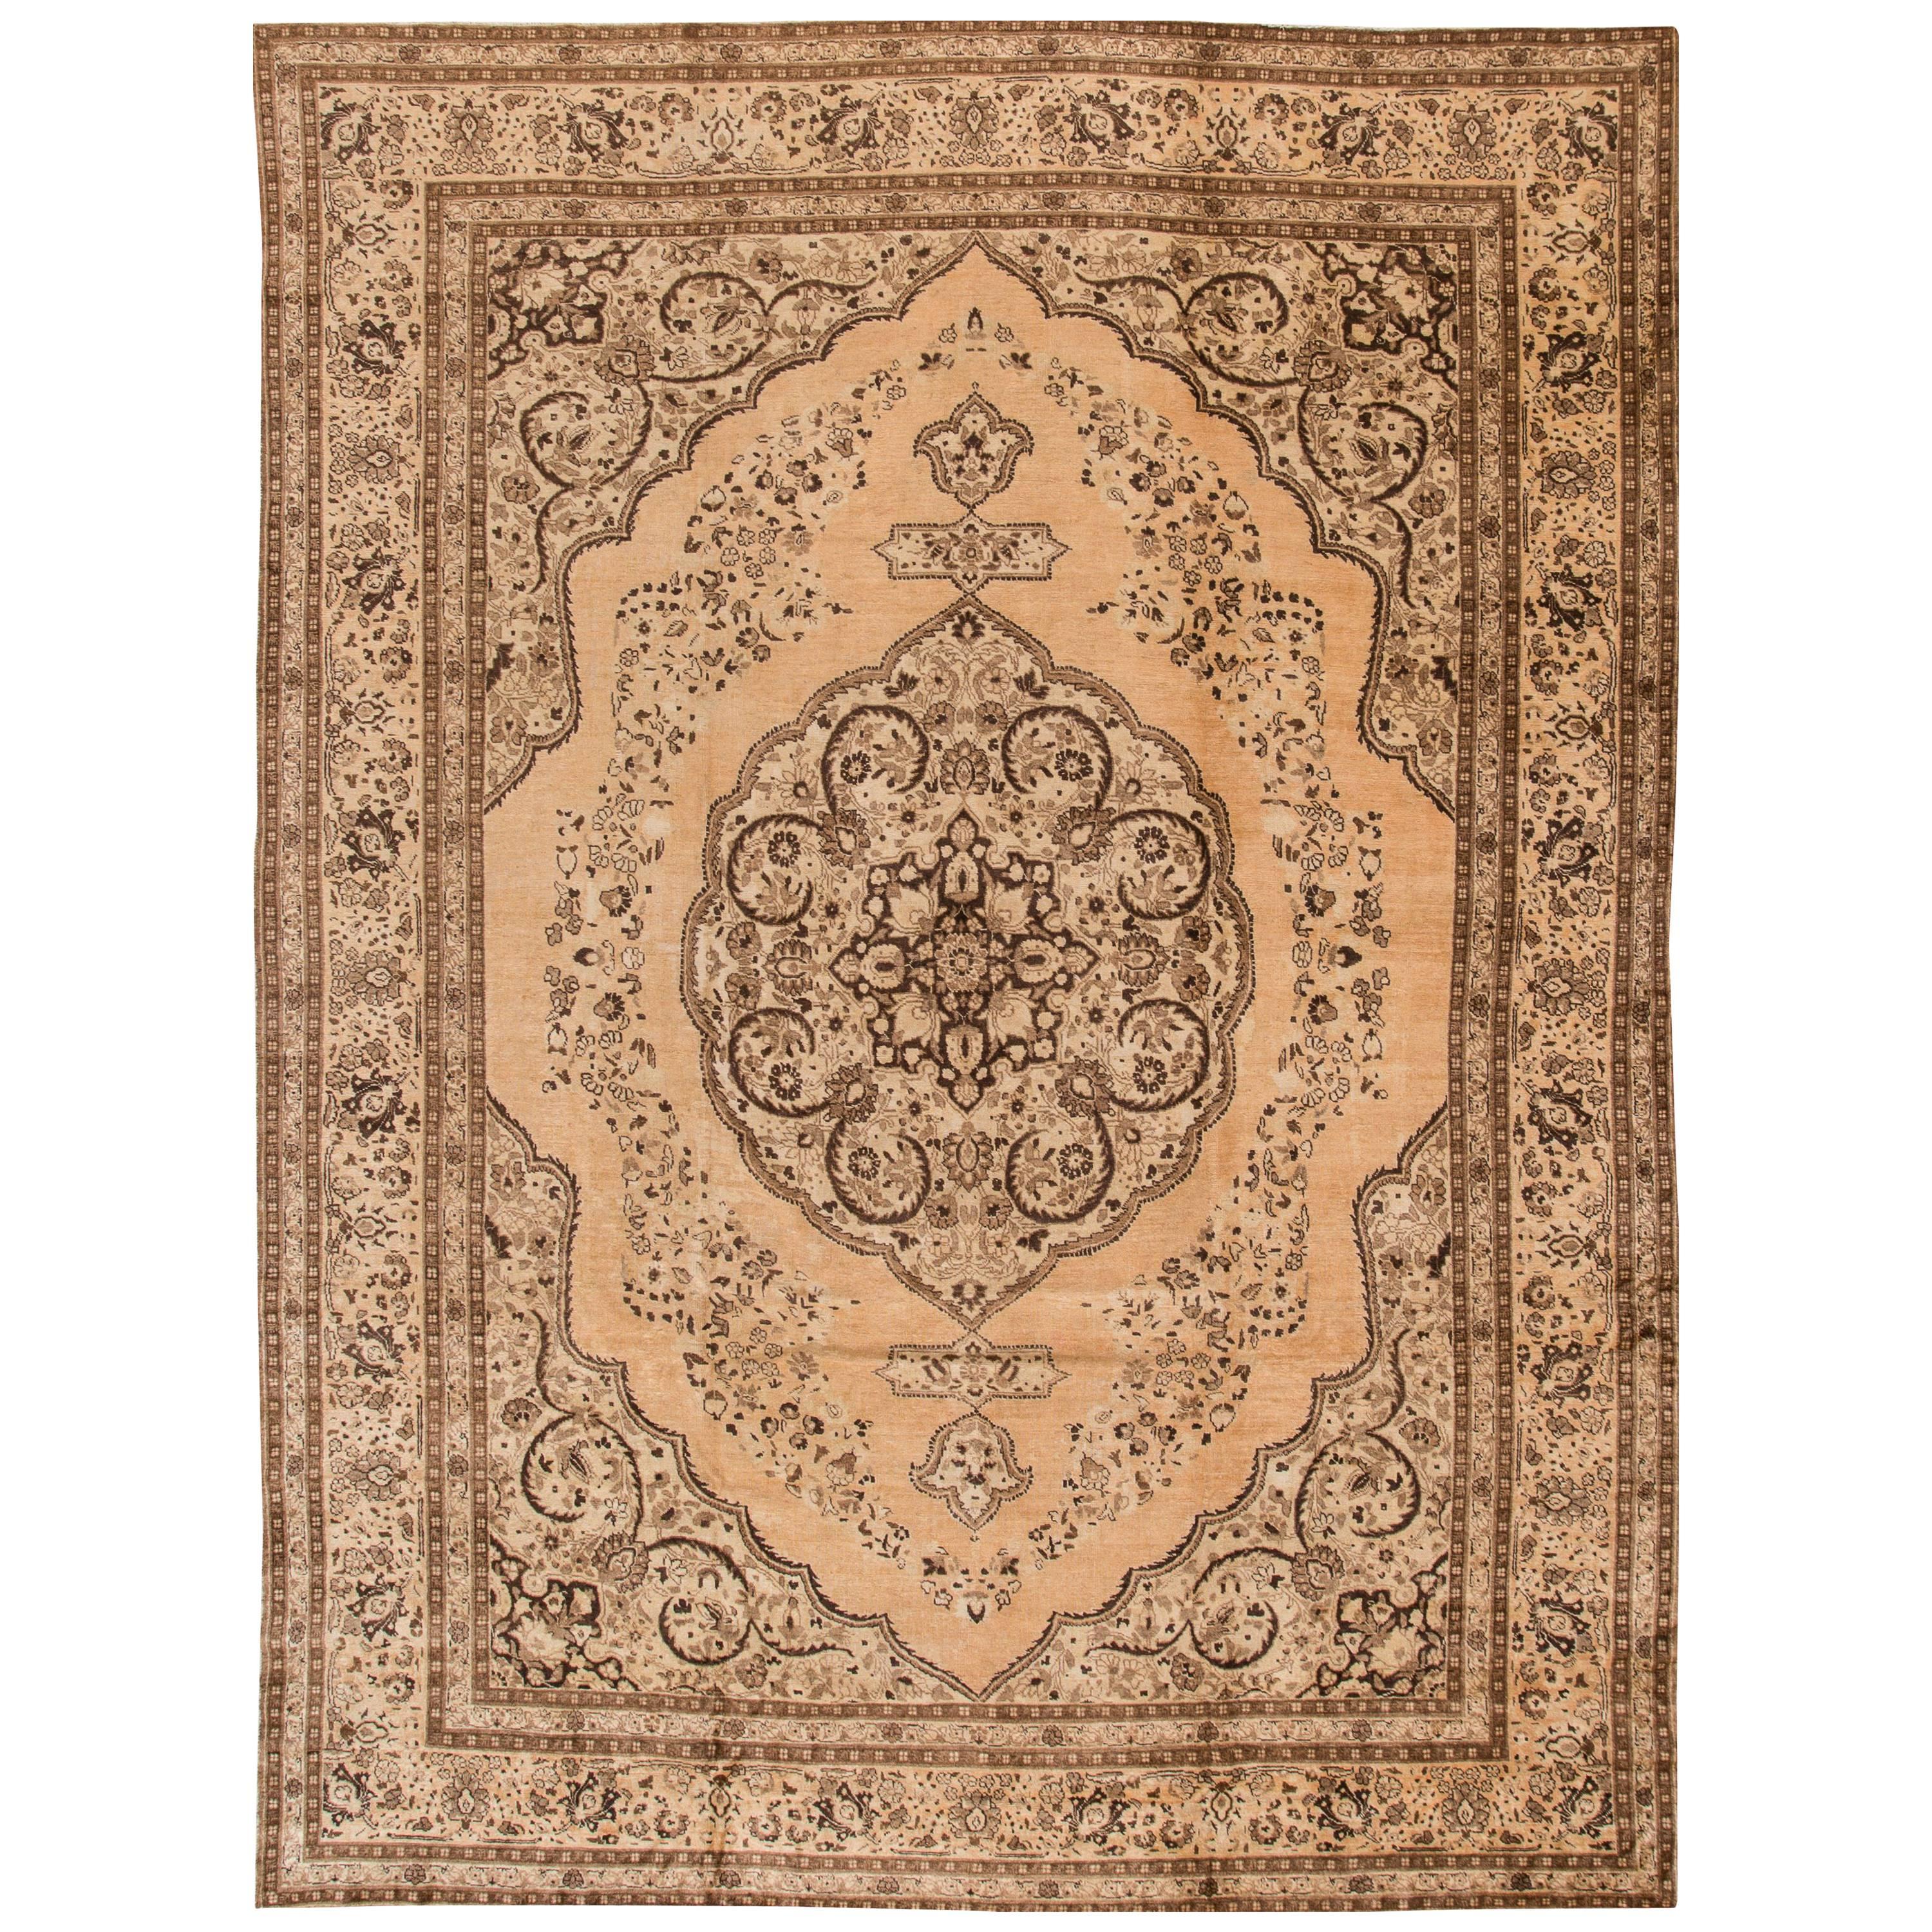 Great Looking Antique Persian Tabriz Rug